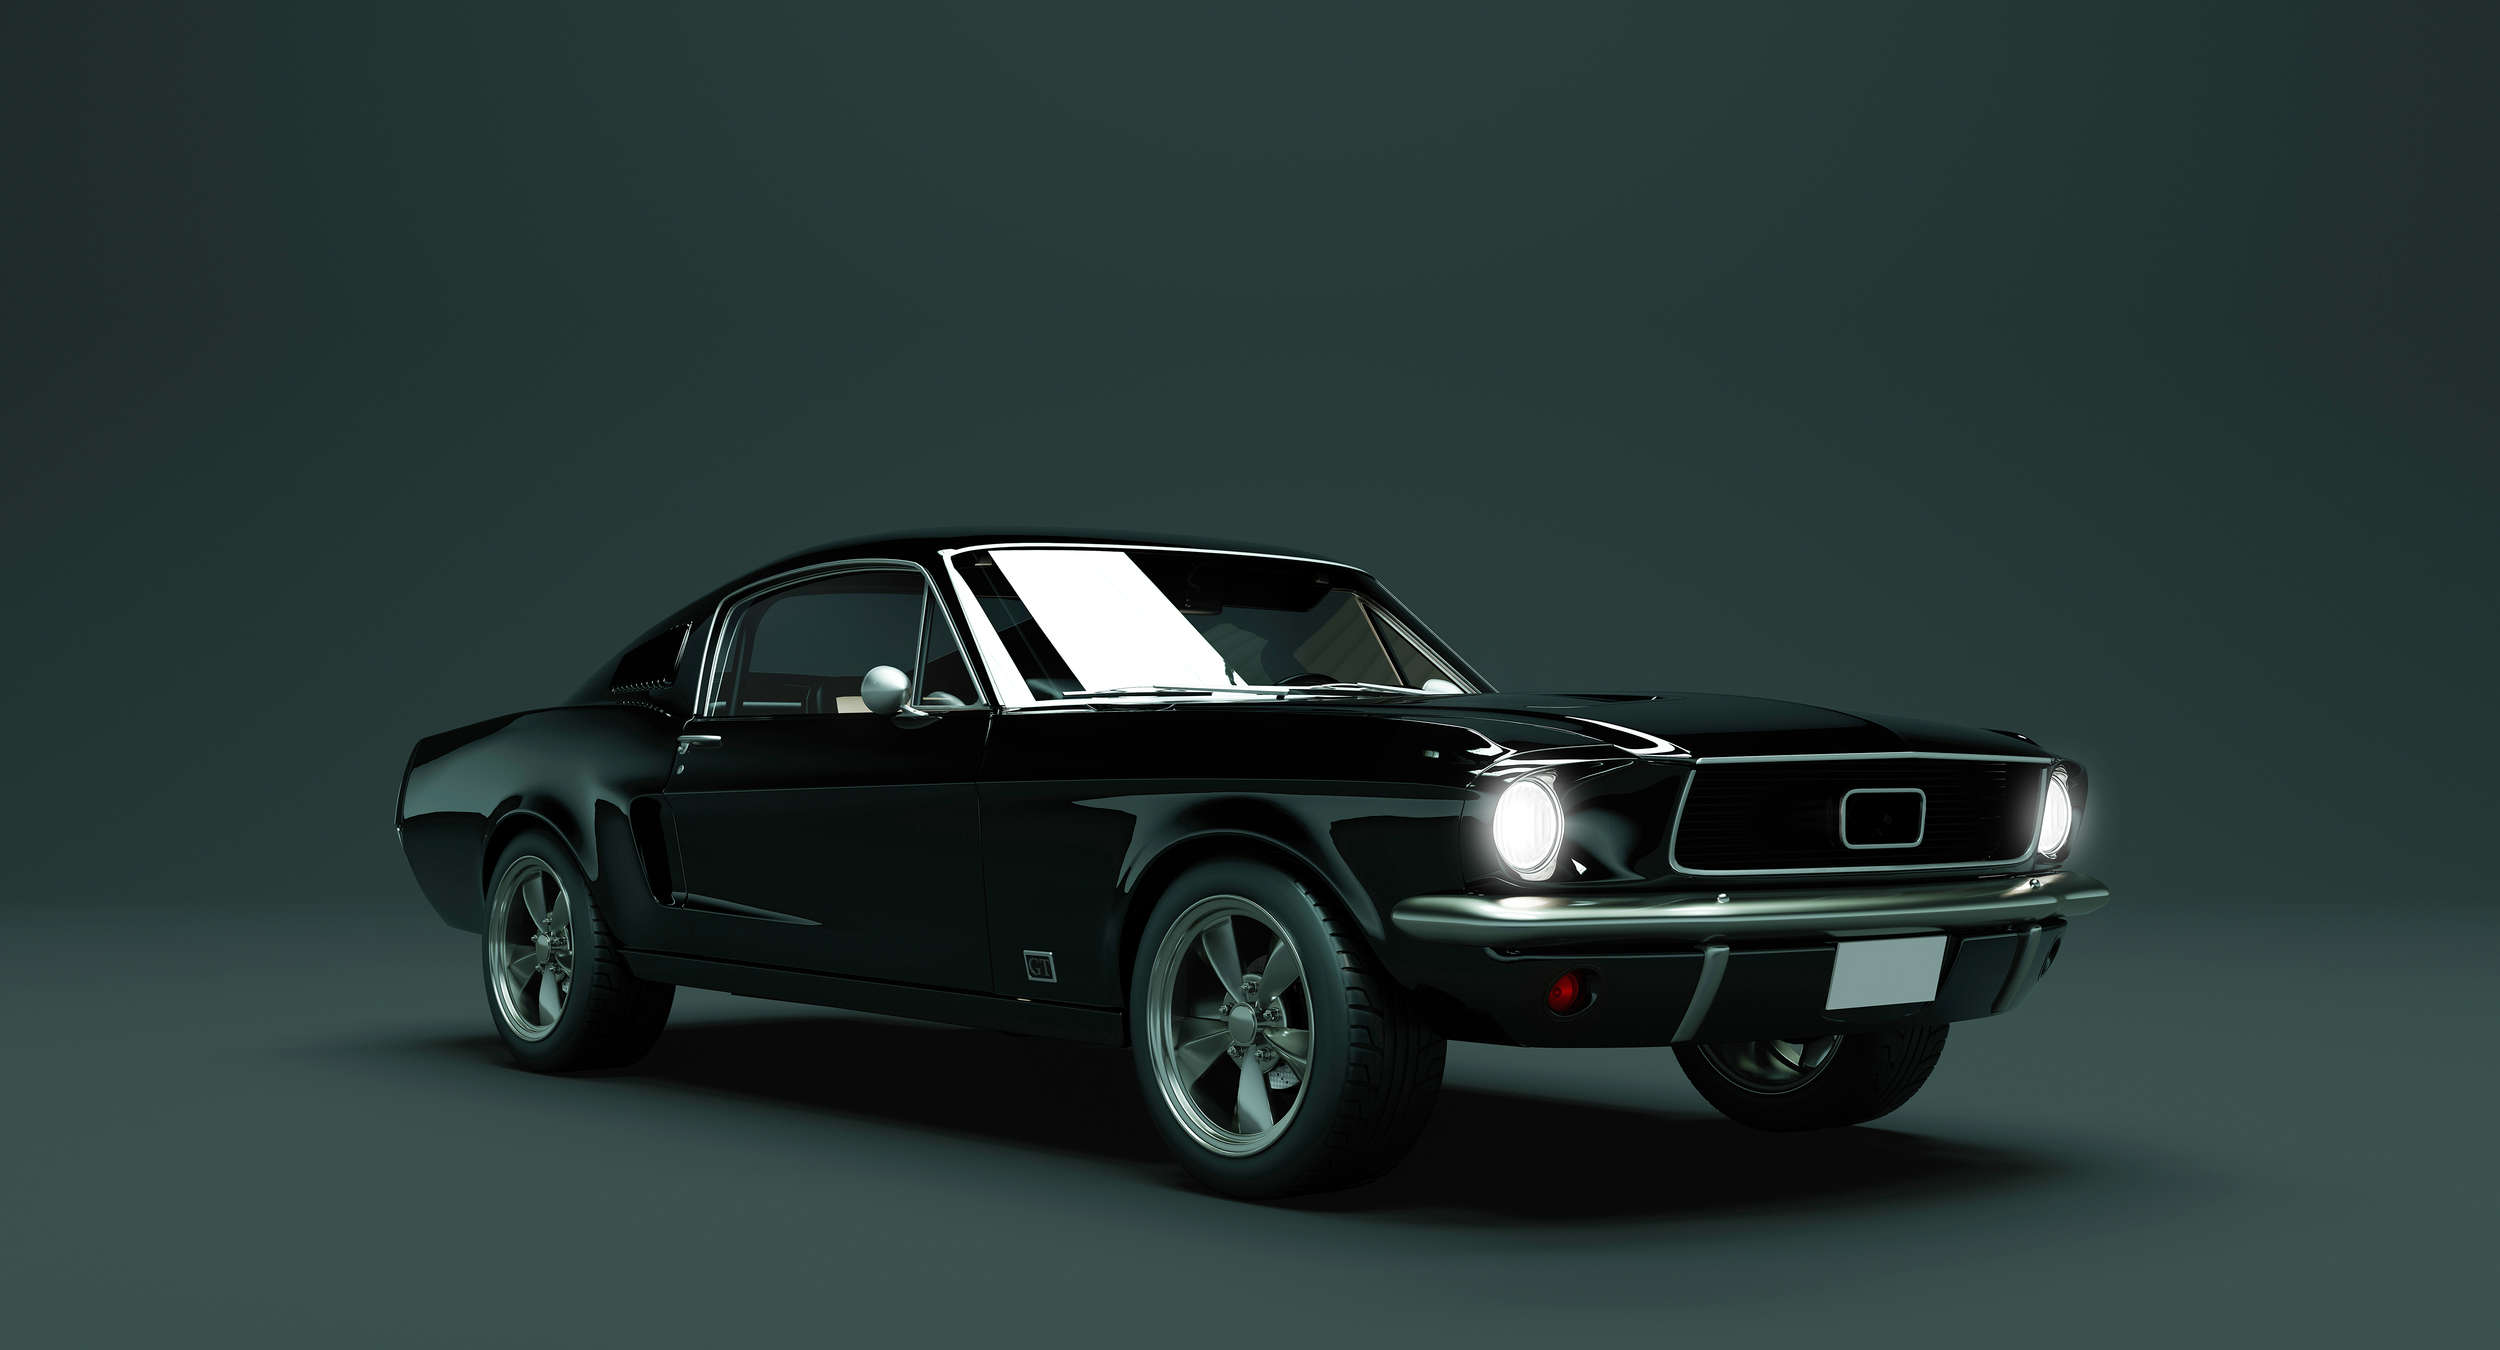             Mustang 2 - Digital behang, Mustang 1968 Vintage Car - Blauw, Zwart | Premium Smooth Vliesbehang
        